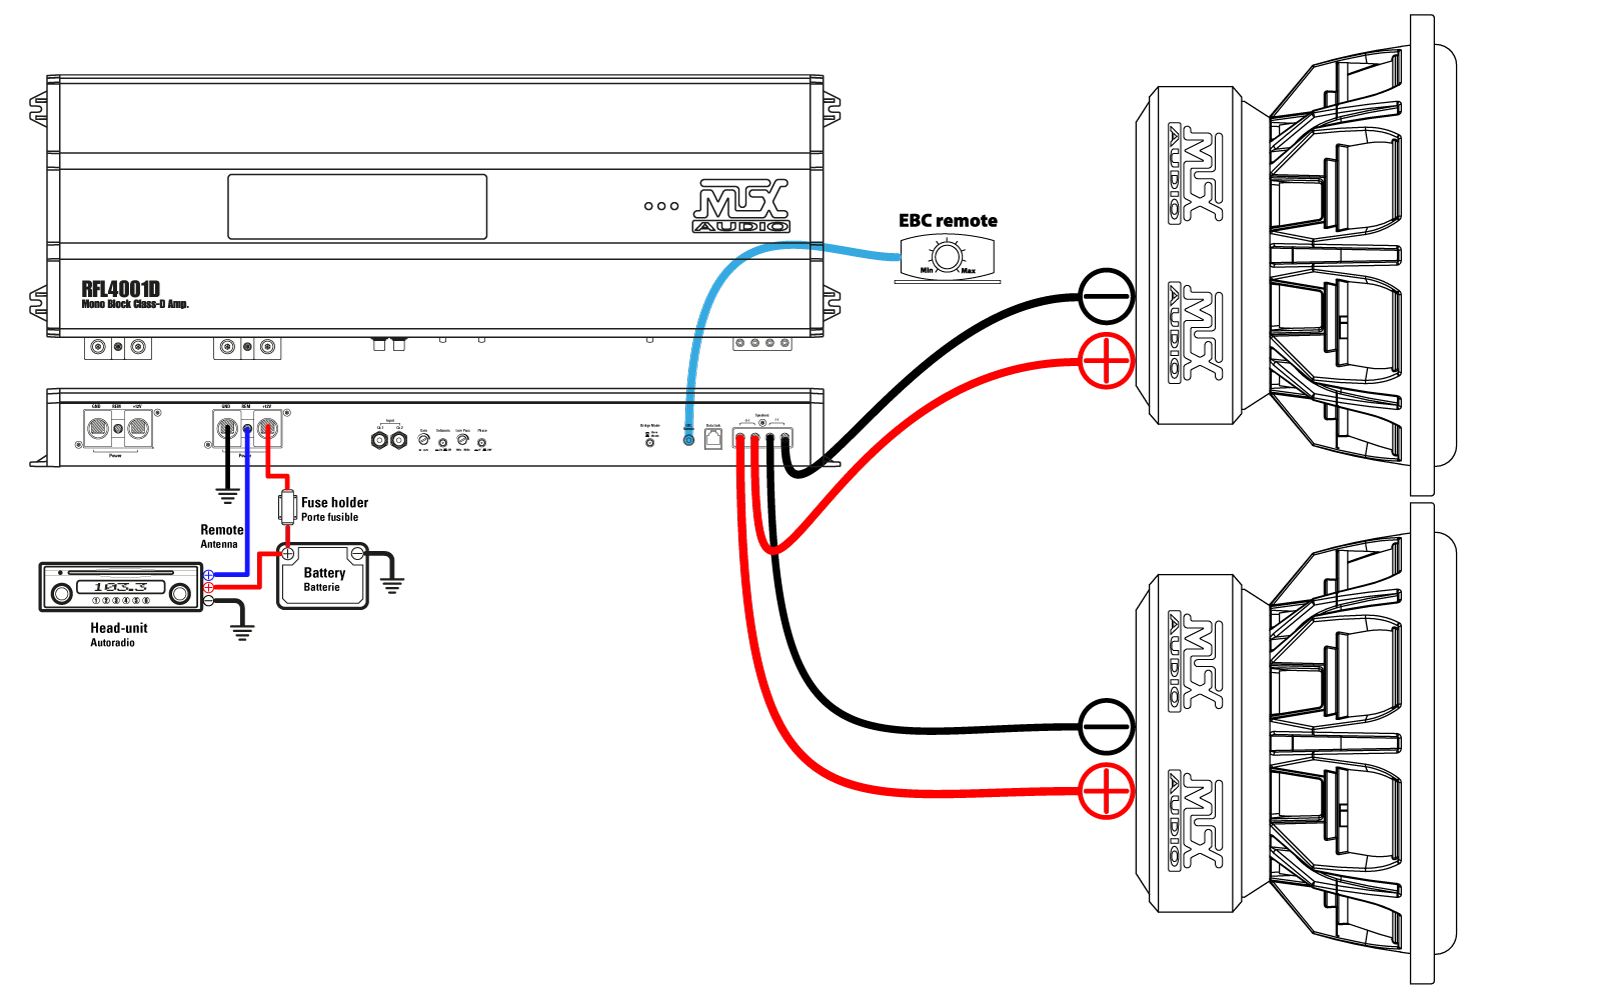 #2. Un amplificateur RFL4001D se connecte parfaitement avec deux subwoofers TX815 (1Ω)